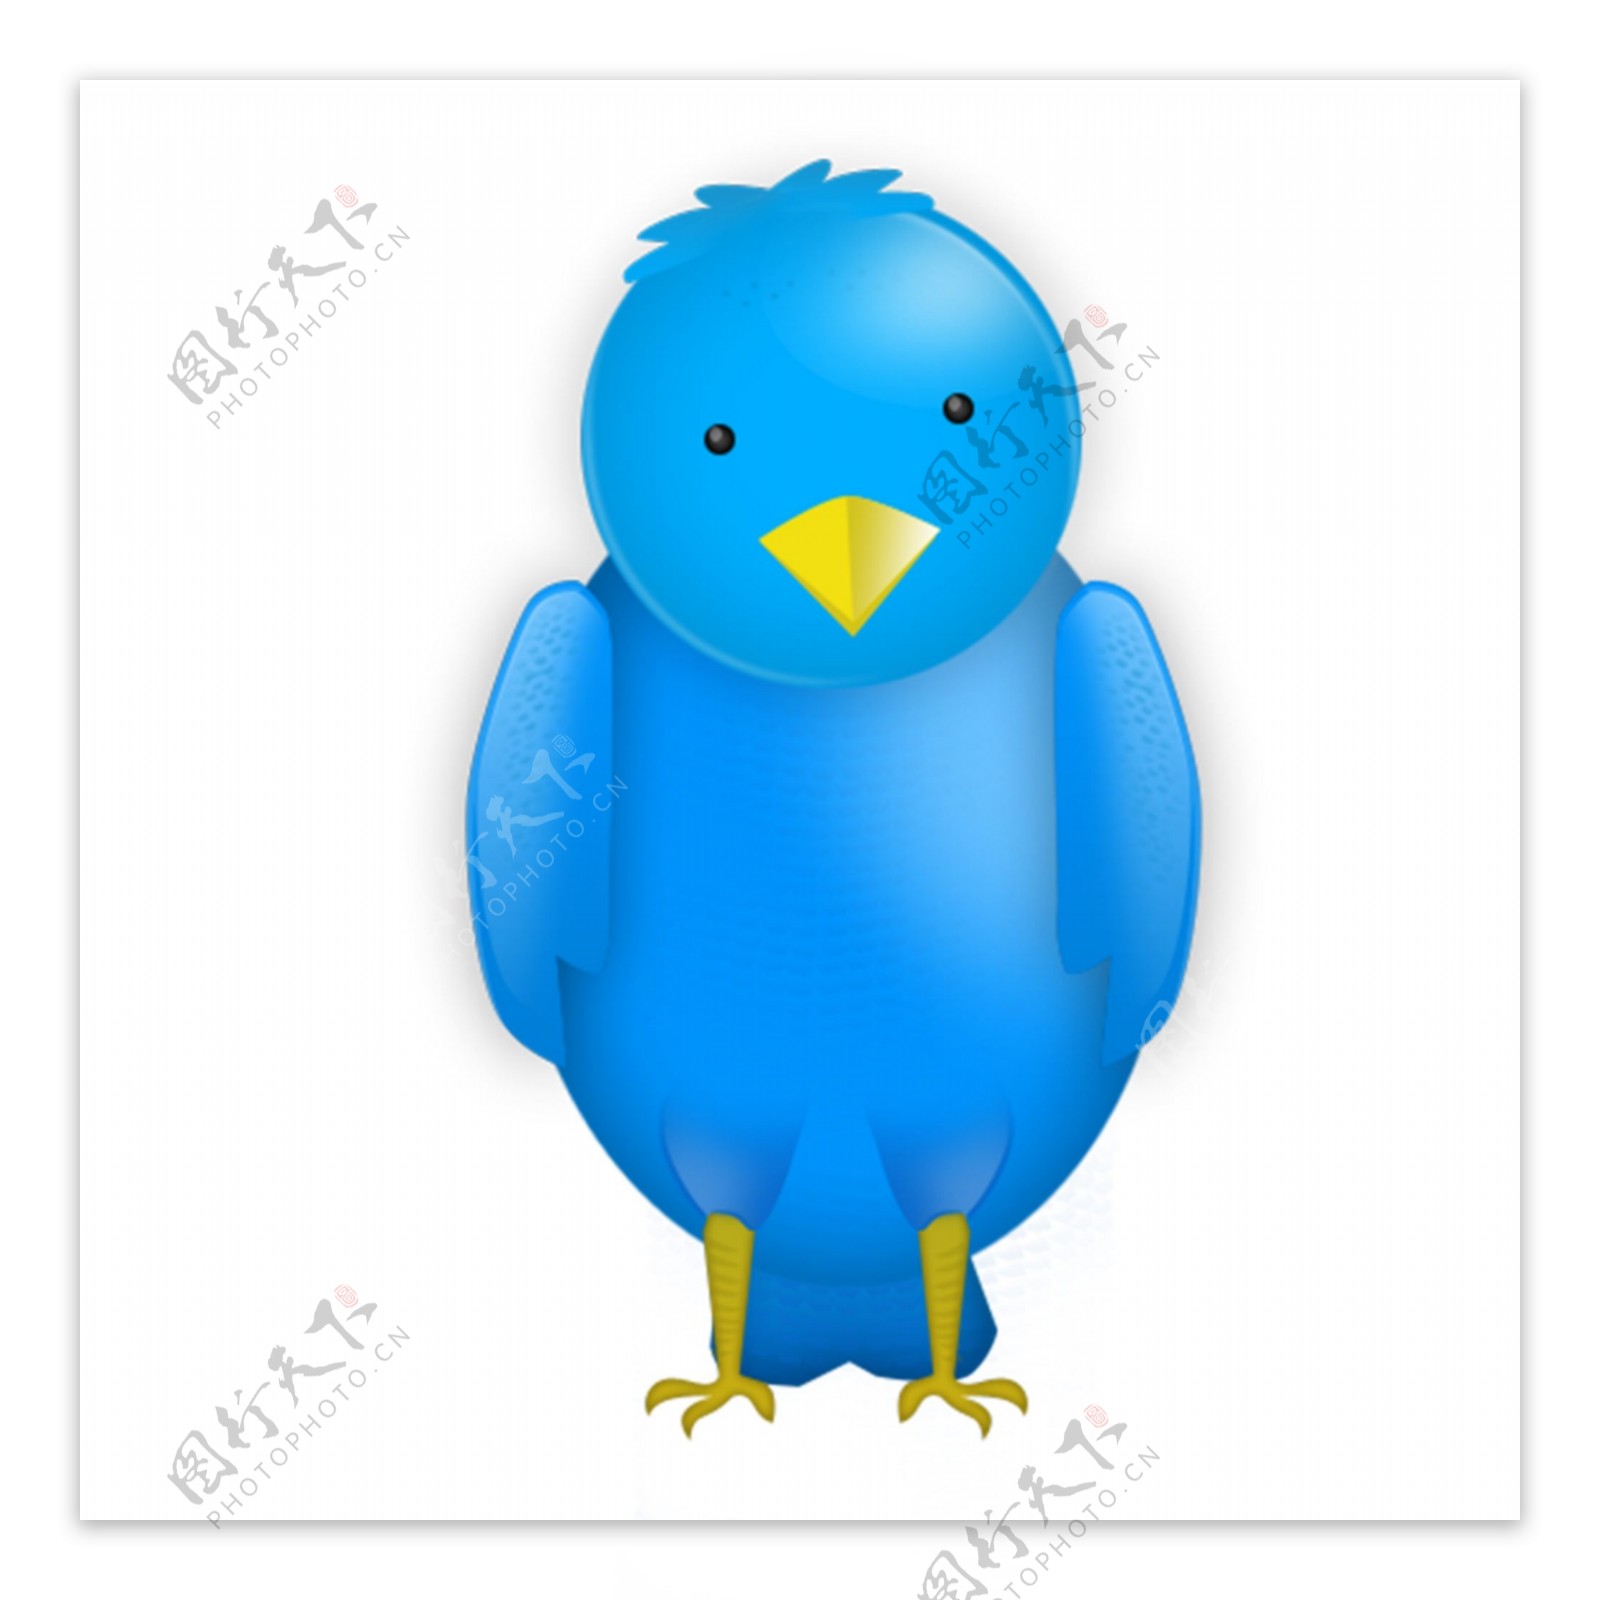 漂亮的蓝色小鸟icon图标设计